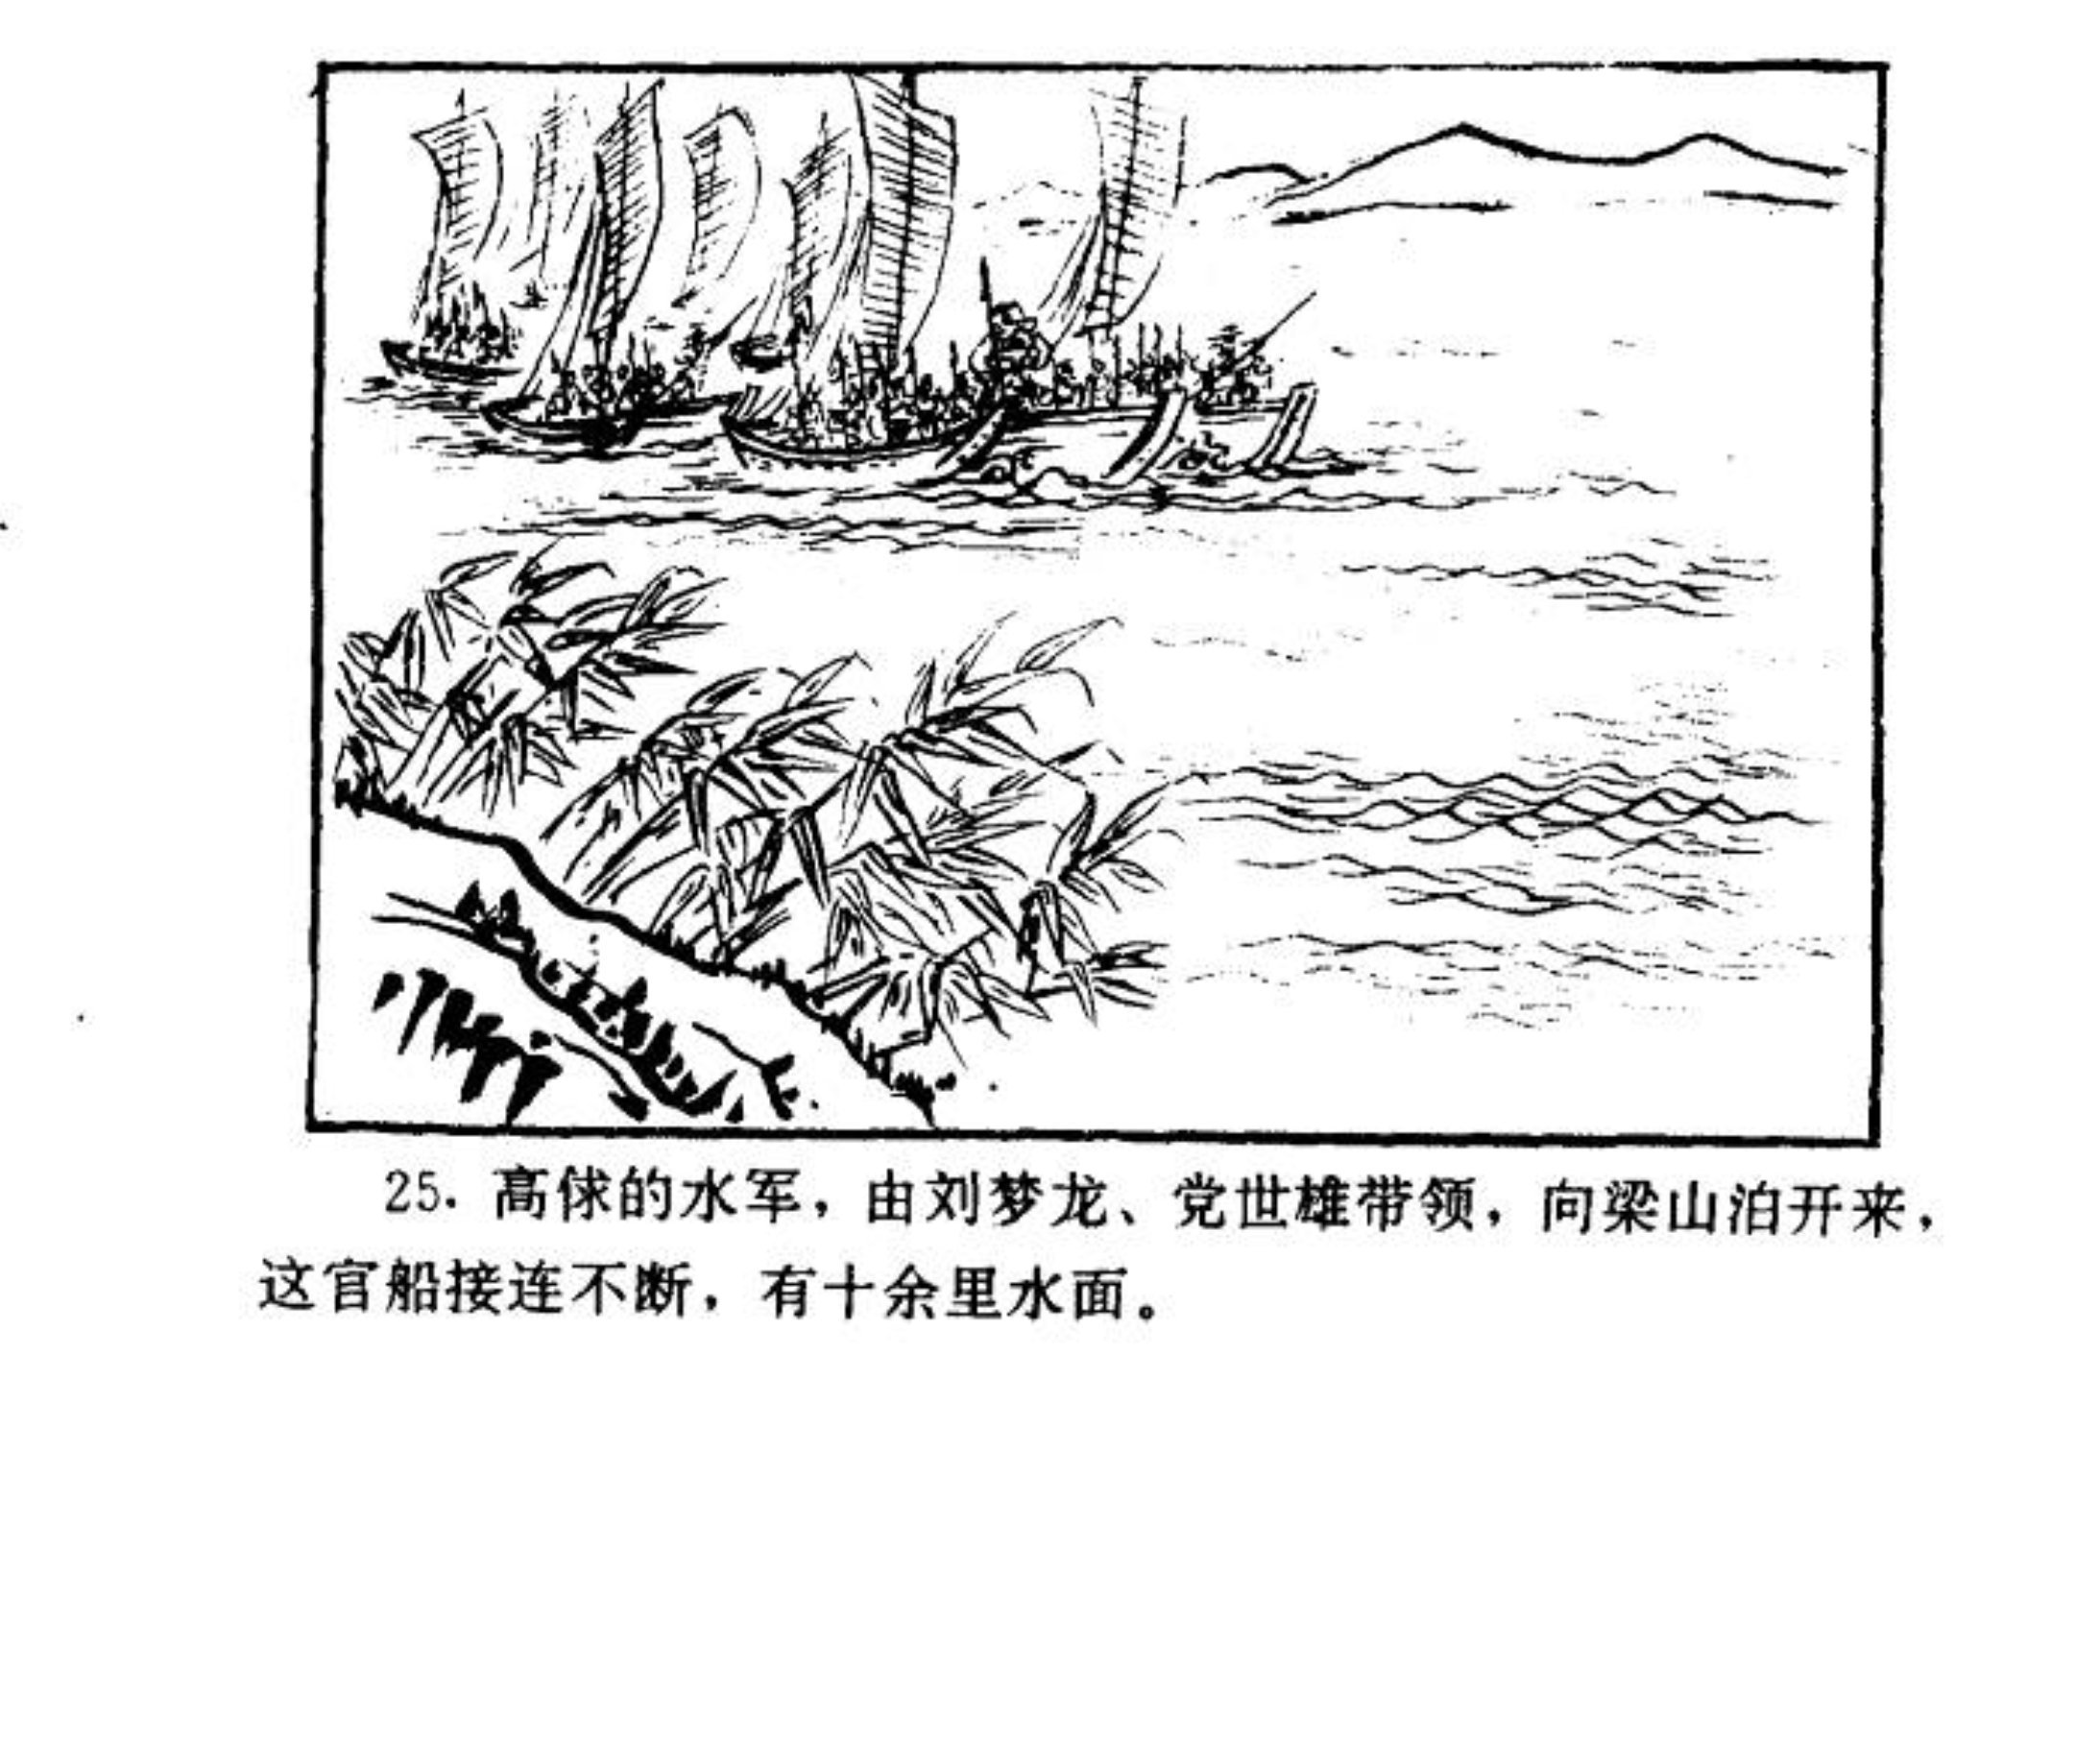 连环画——《水浒传》38《梁山三败高太尉》上，经济日报出版社